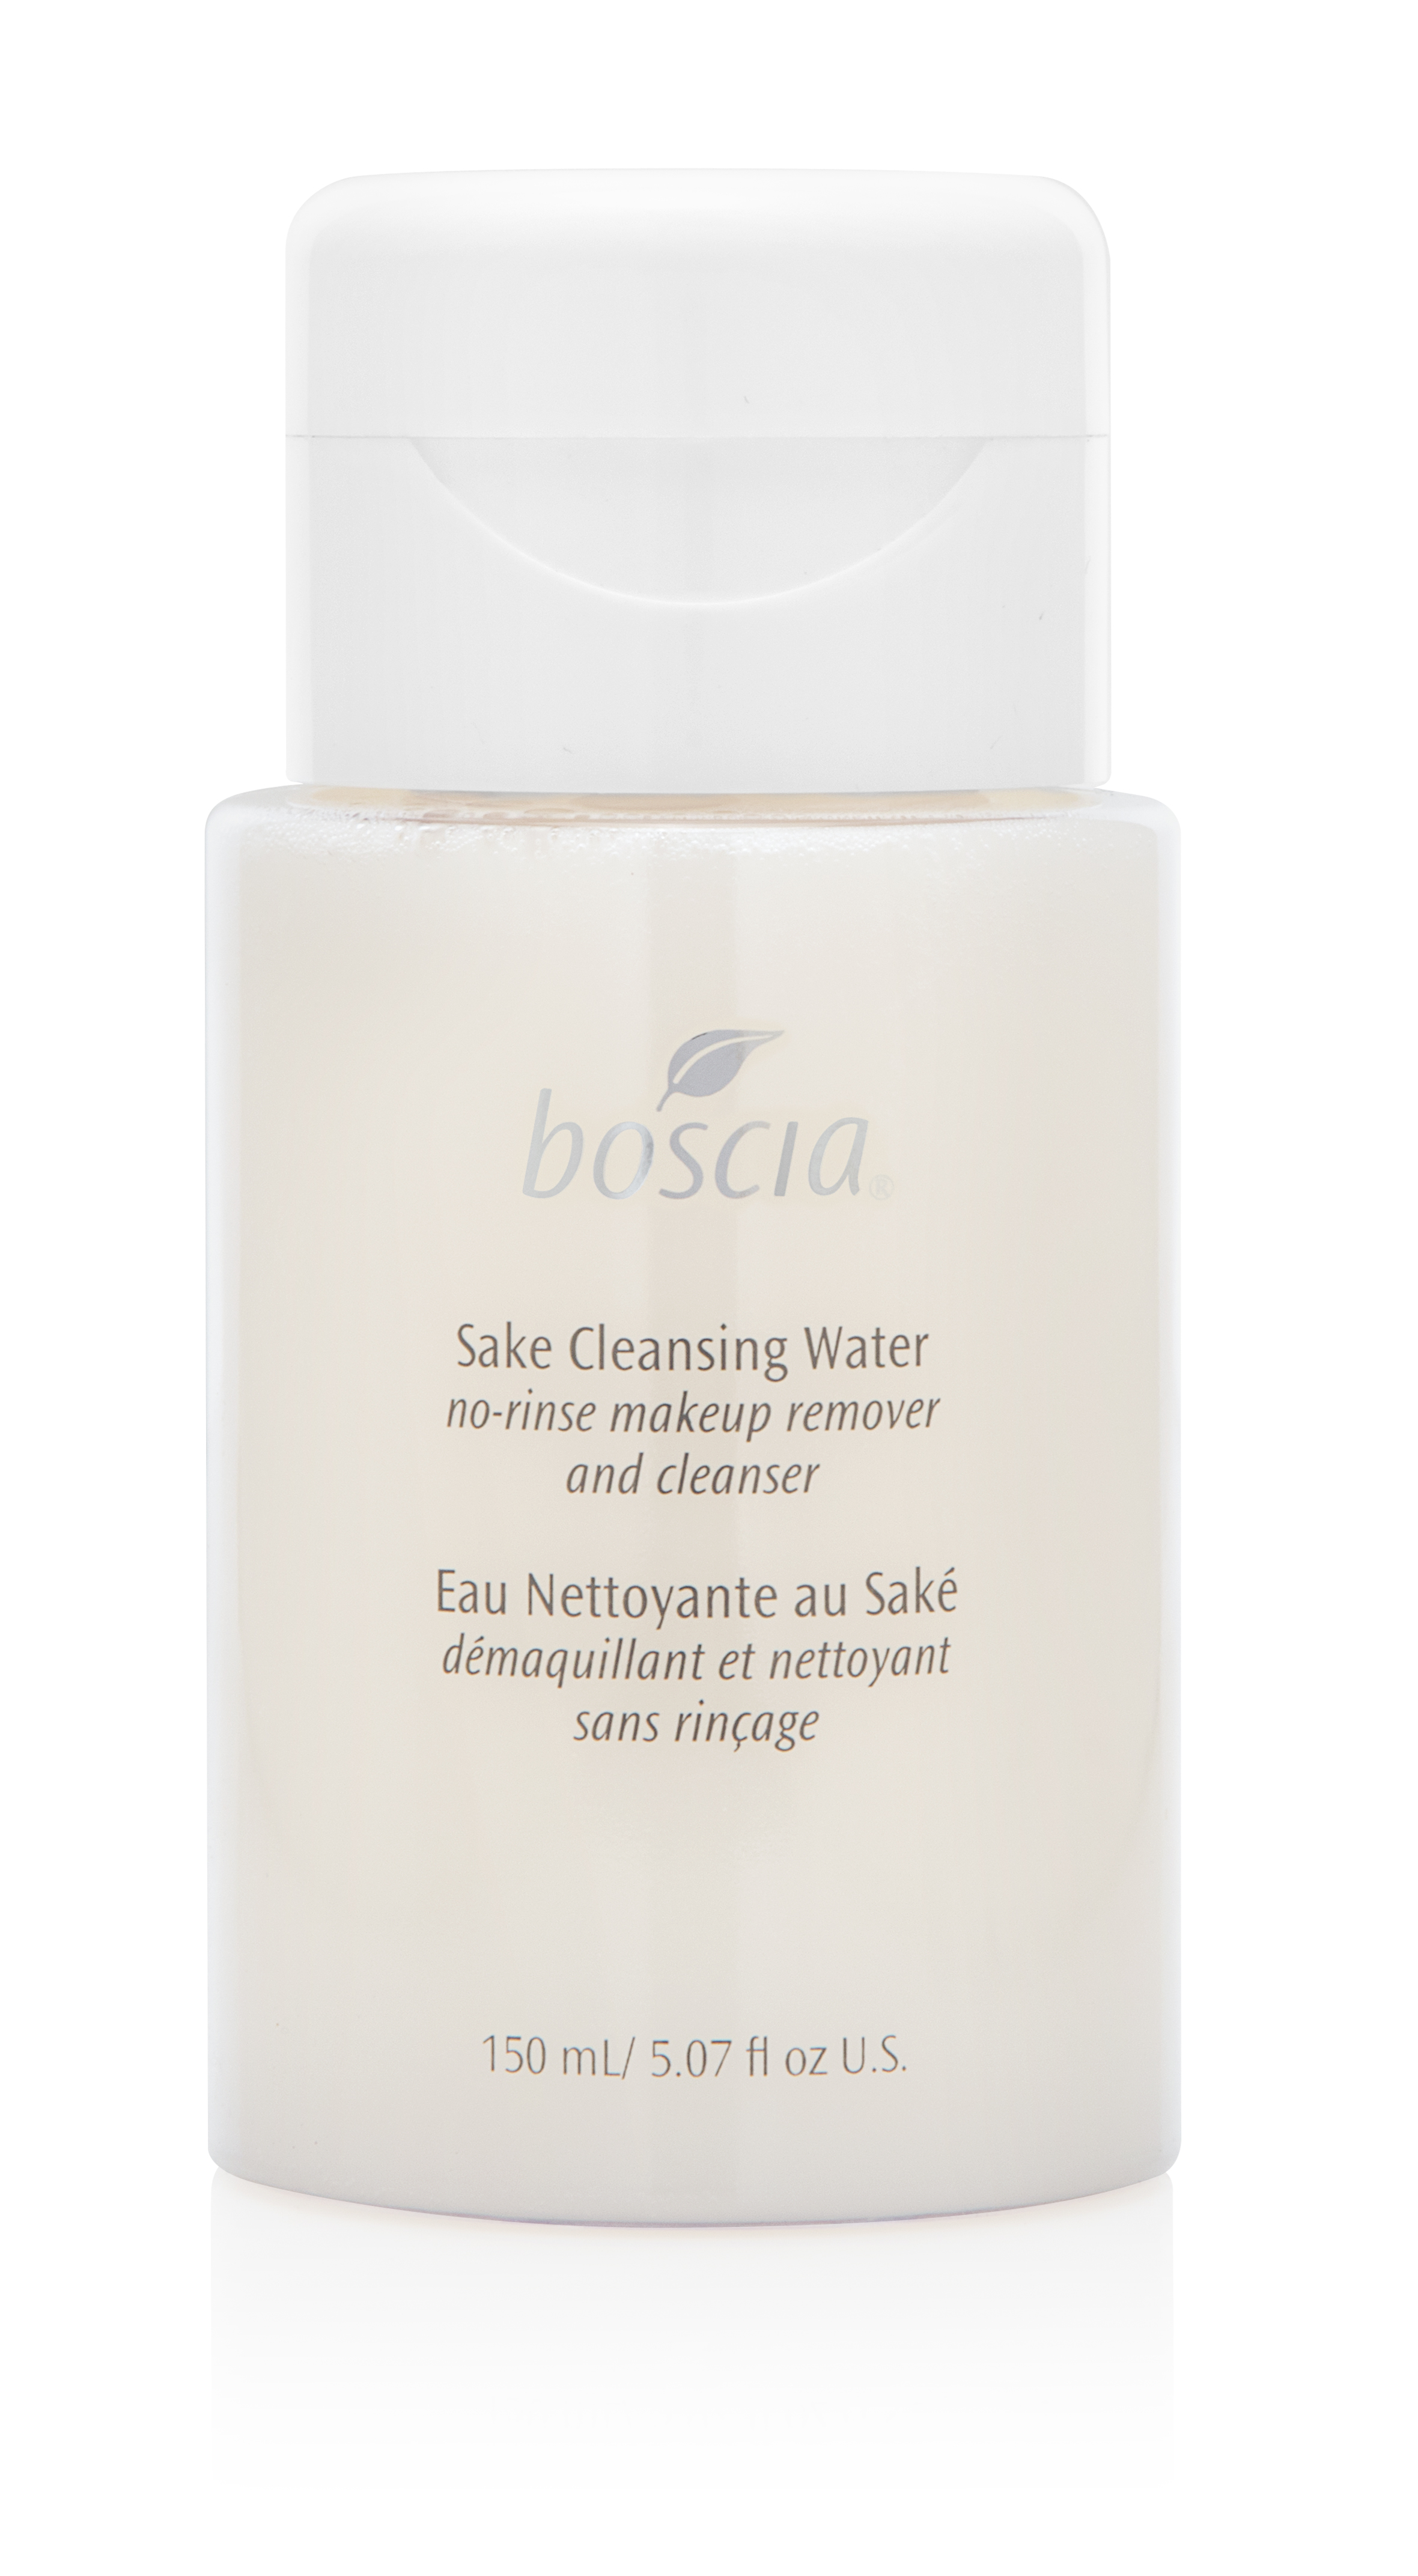 Boscia Sake Cleansing Water